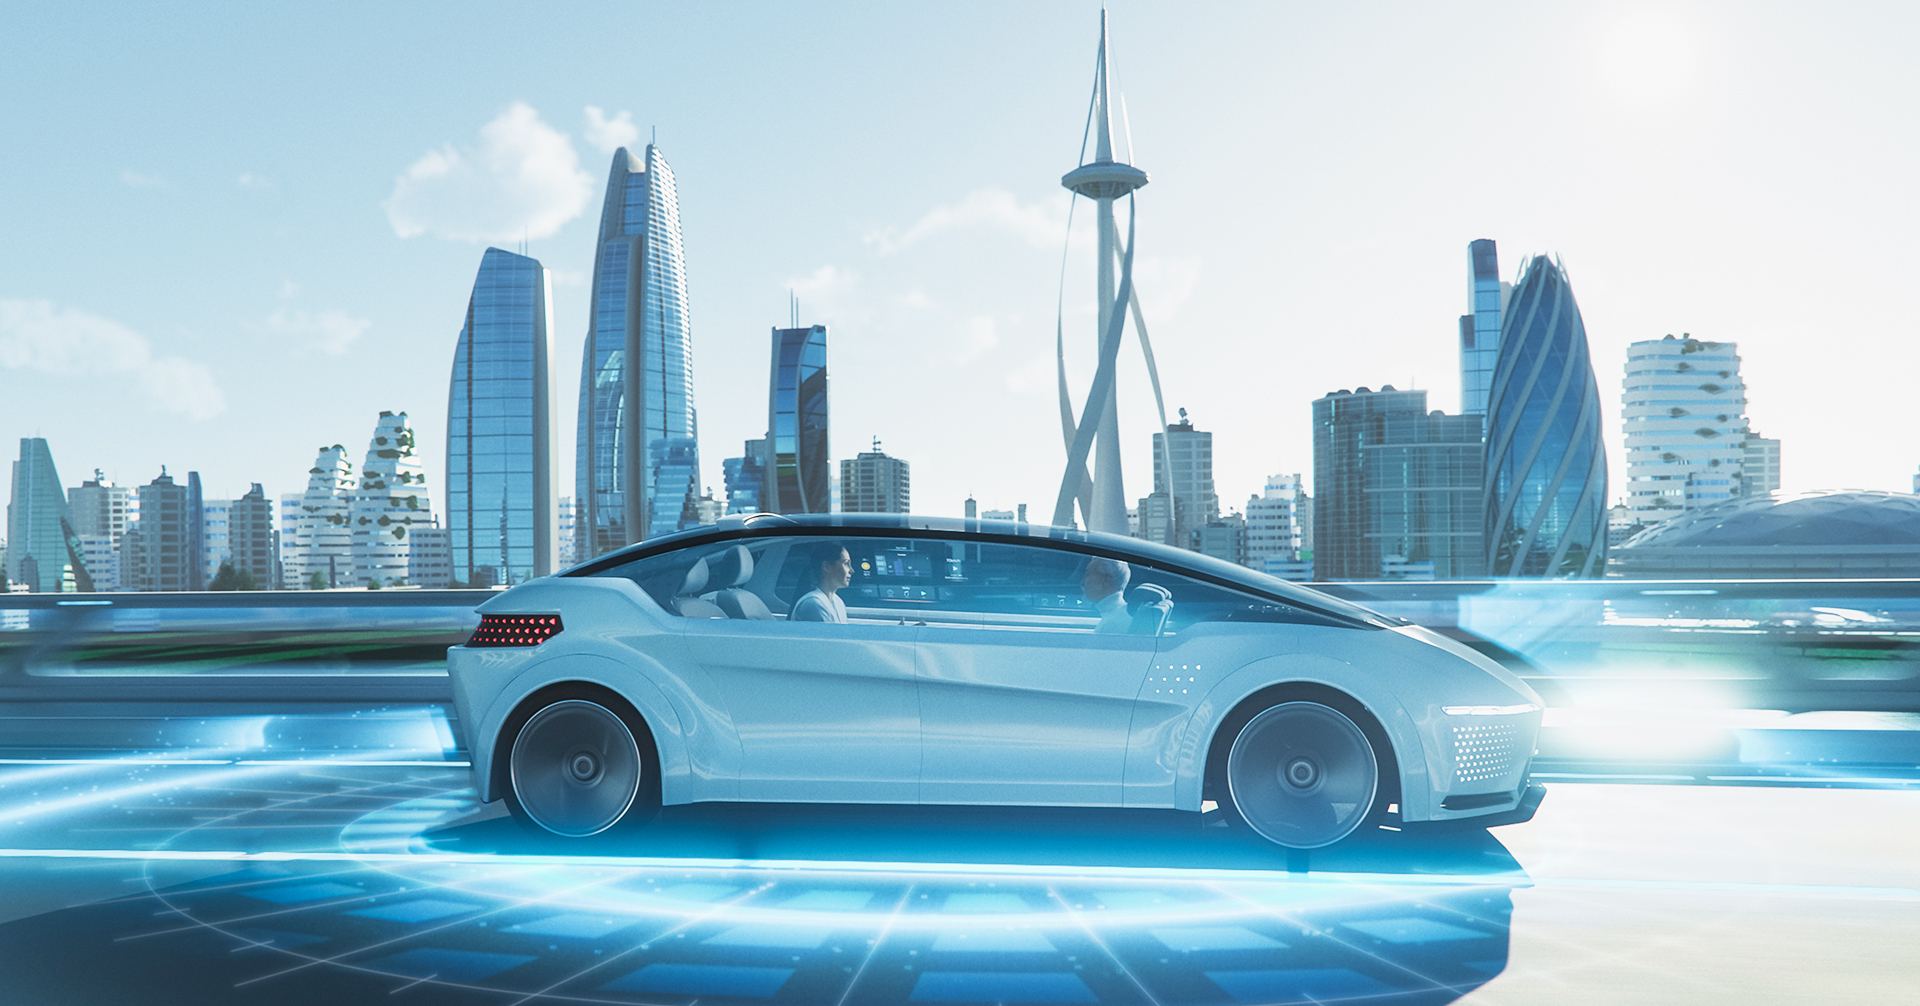 先進駕駛輔助系統ADAS 應用在未來自動駕駛汽車中